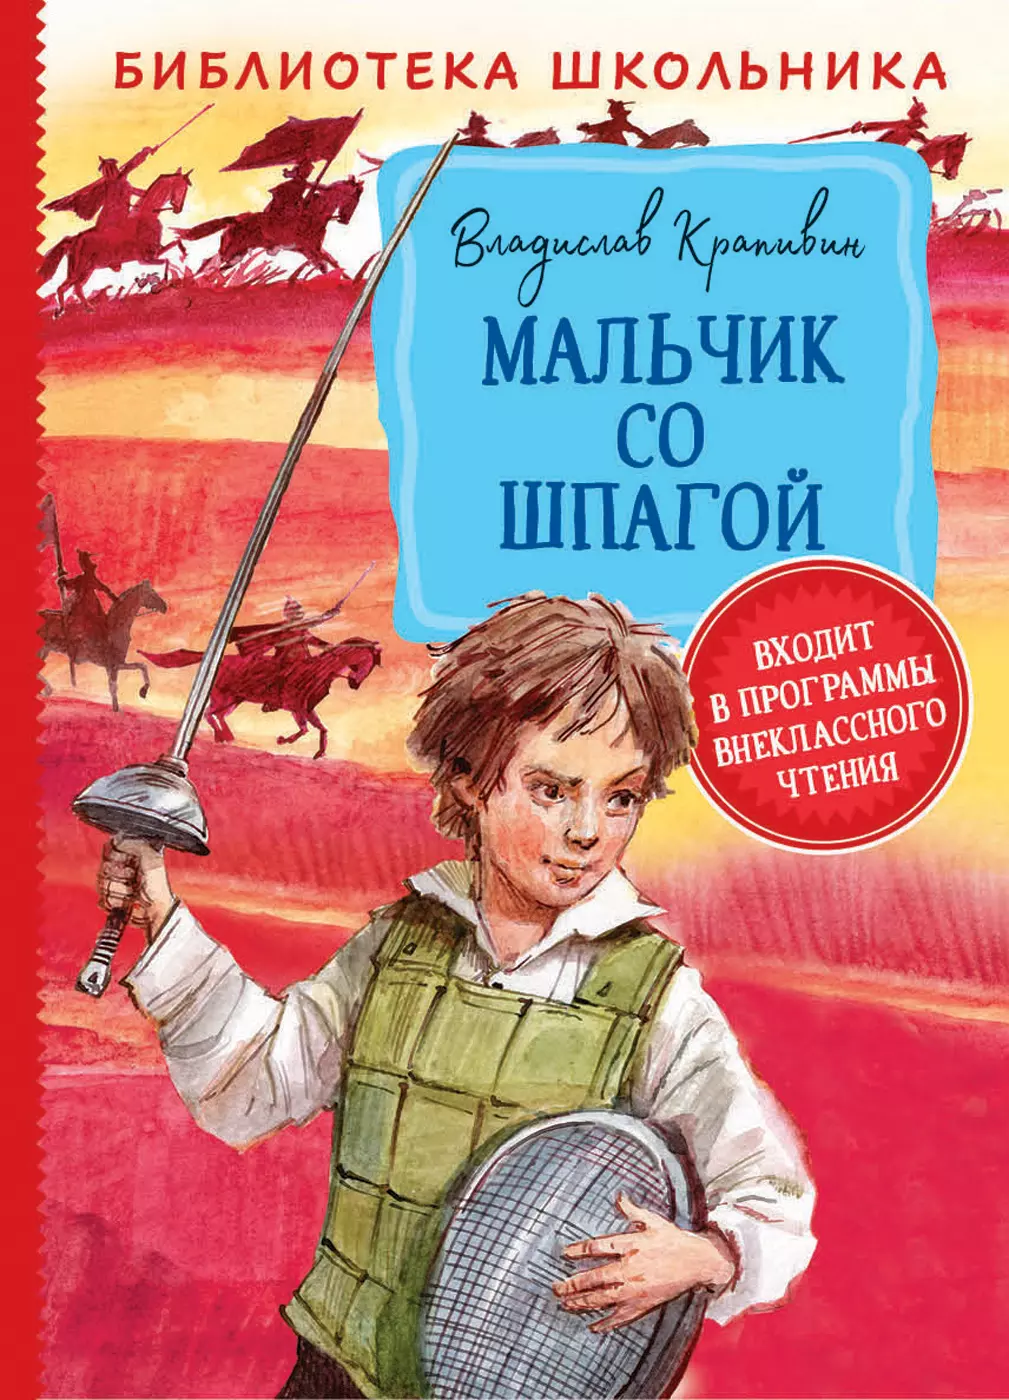 Крапивин В. Мальчик со шпагой Библиотека школьника. изд. Росмэн